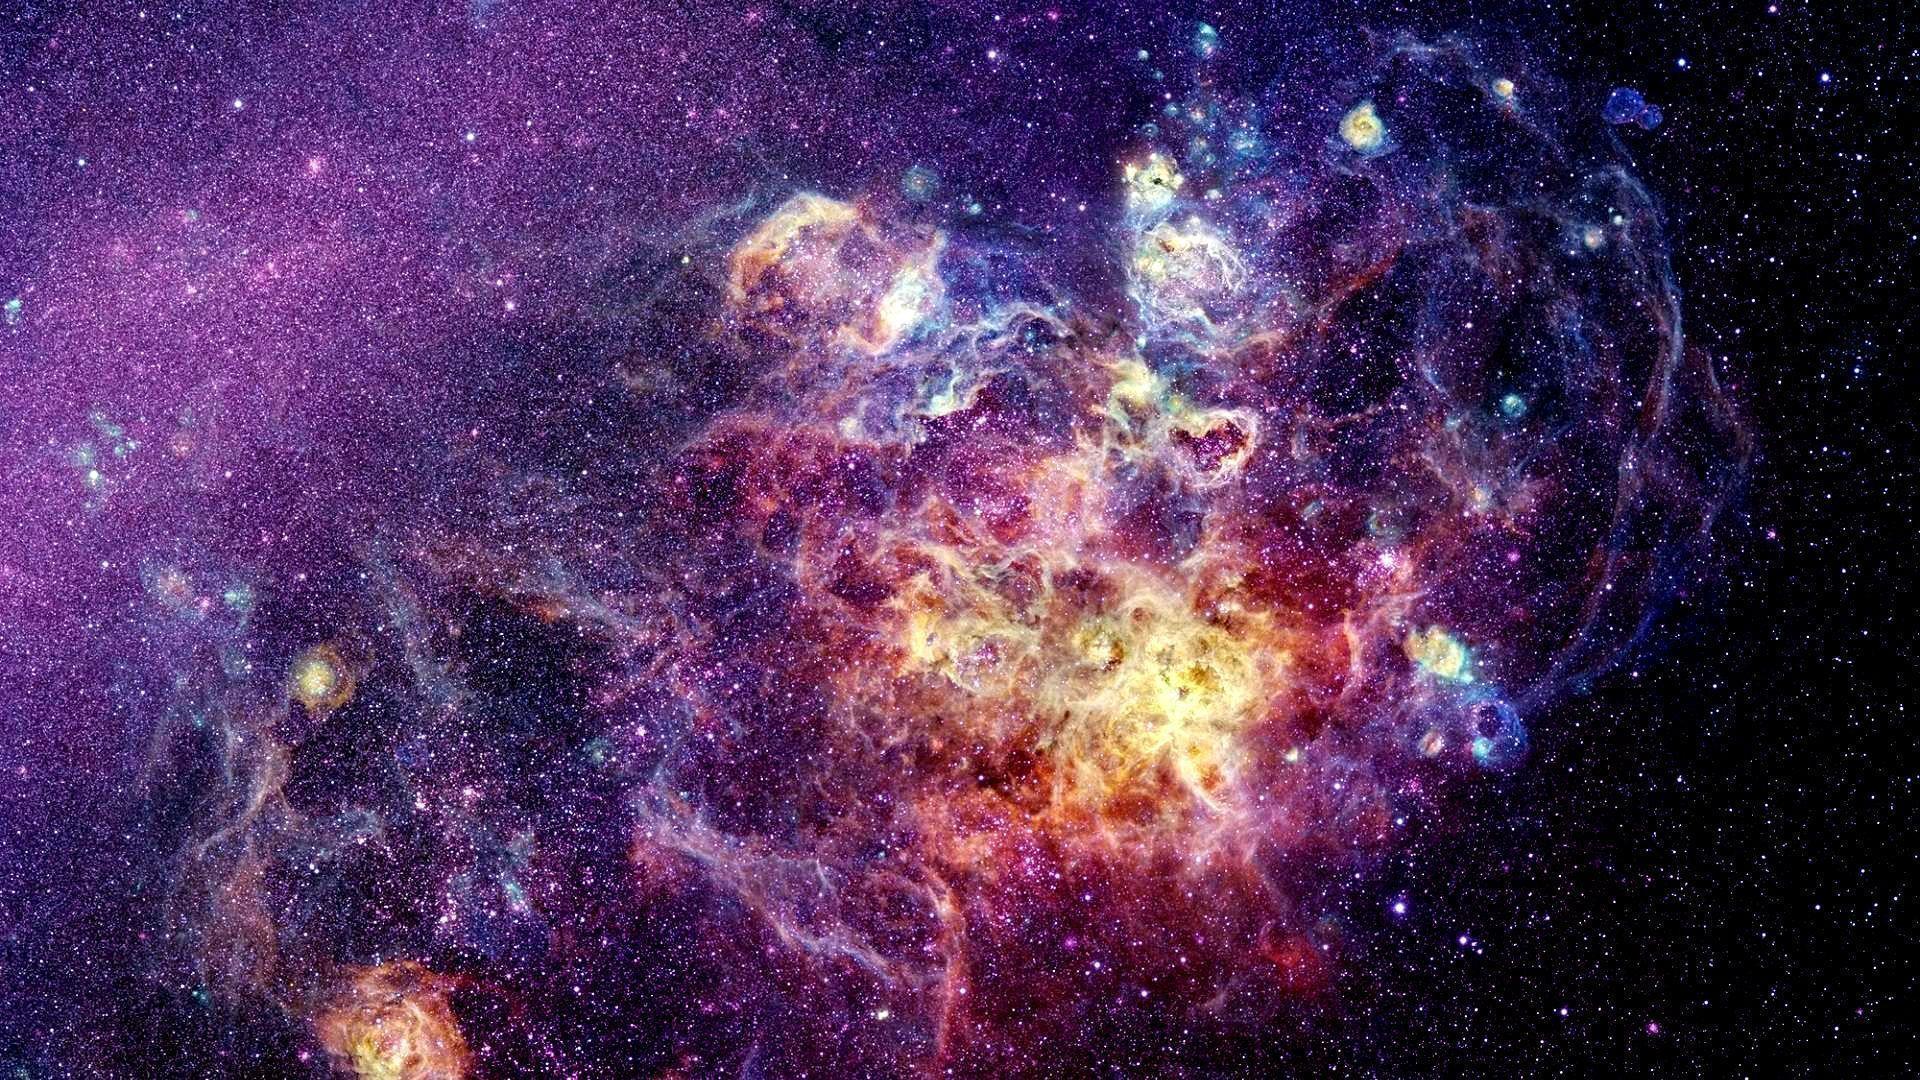 Nebula Wallpapers